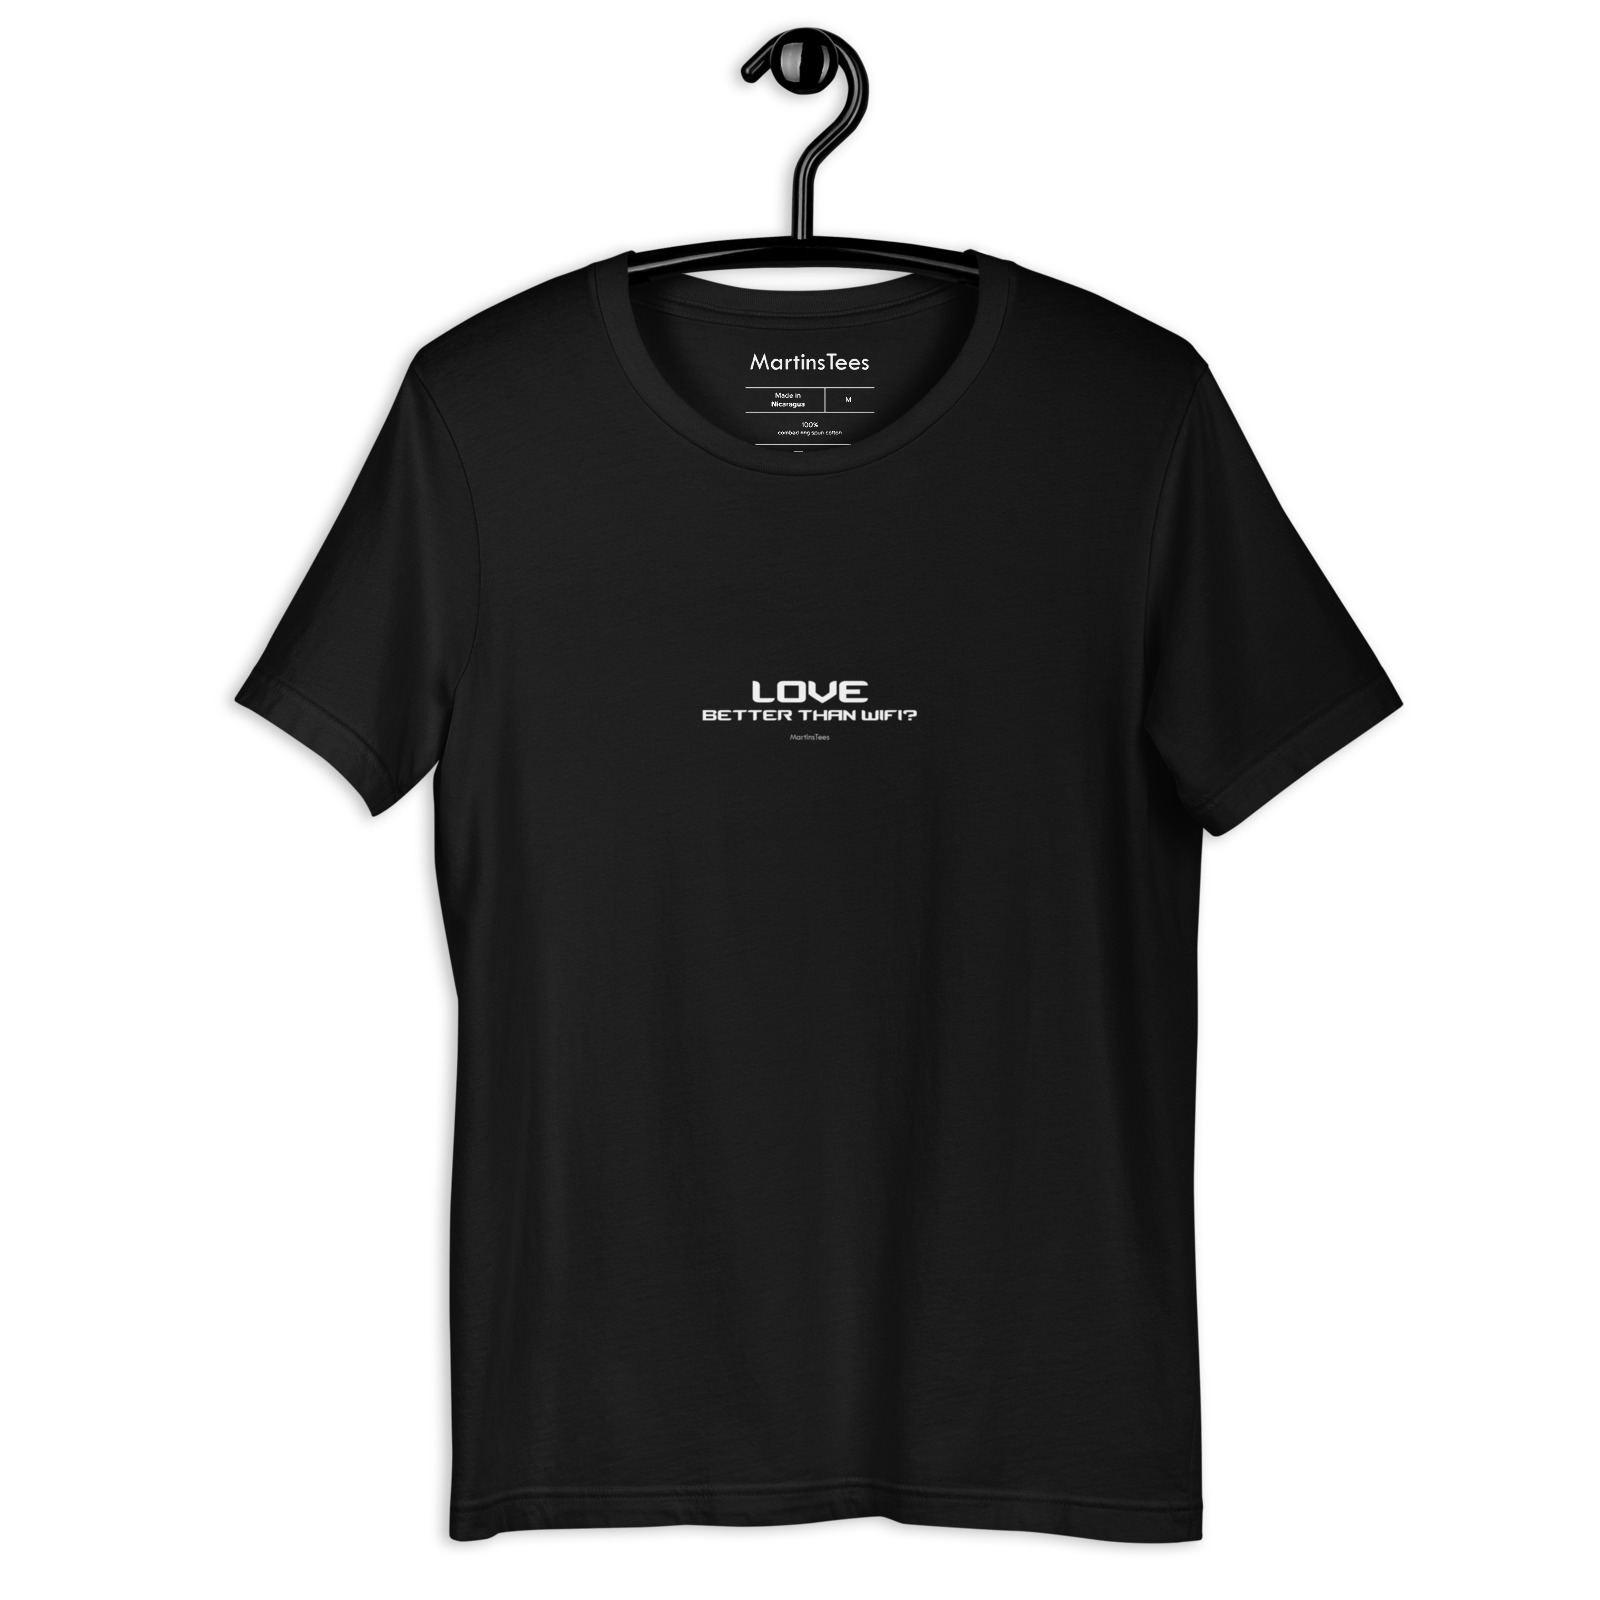 T-shirt: LOVE - BETTER THAN WIFI?